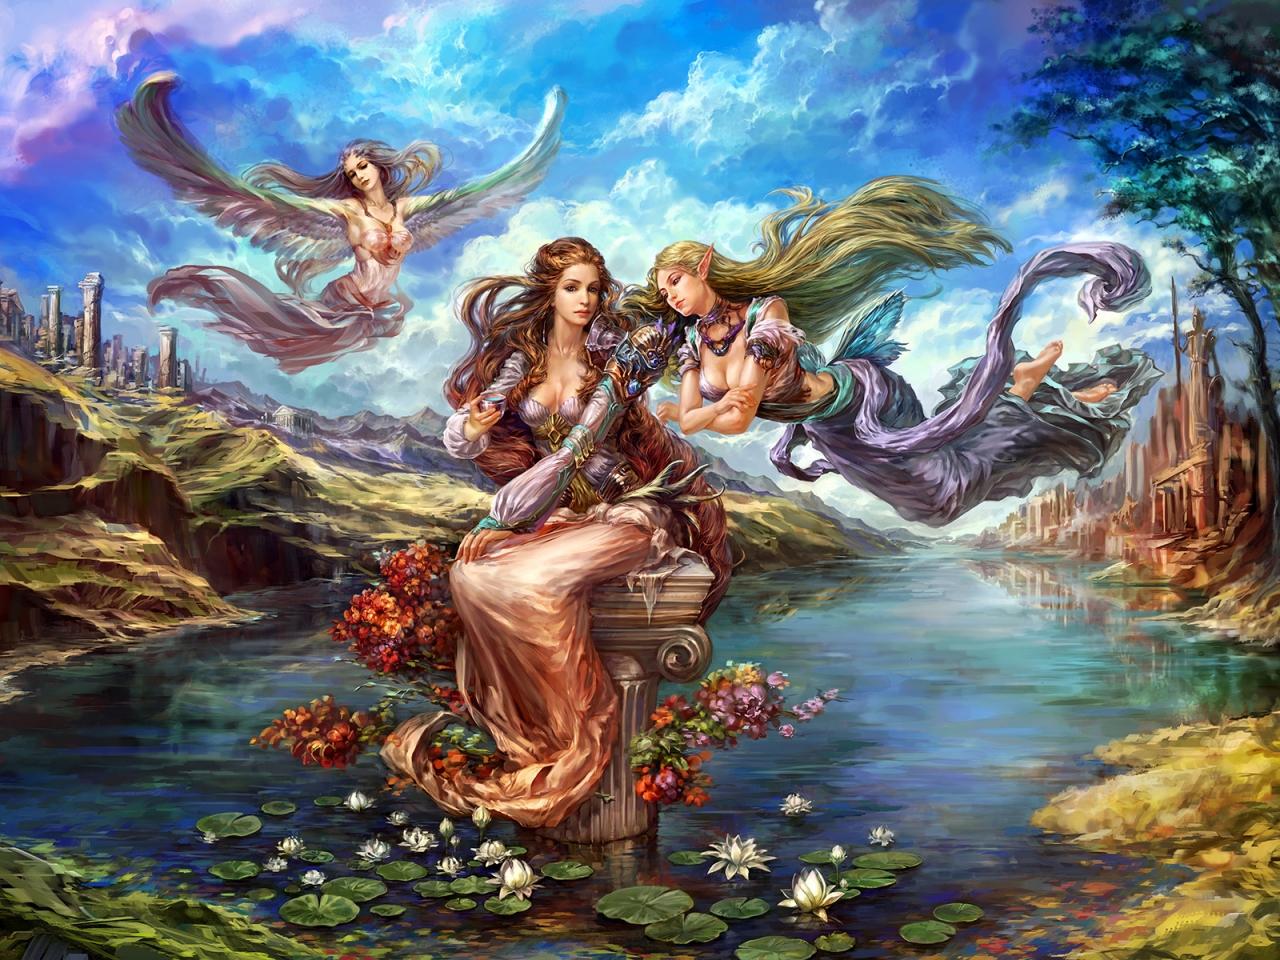 Fantasy Elves from Forsaken World for 1280 x 960 resolution